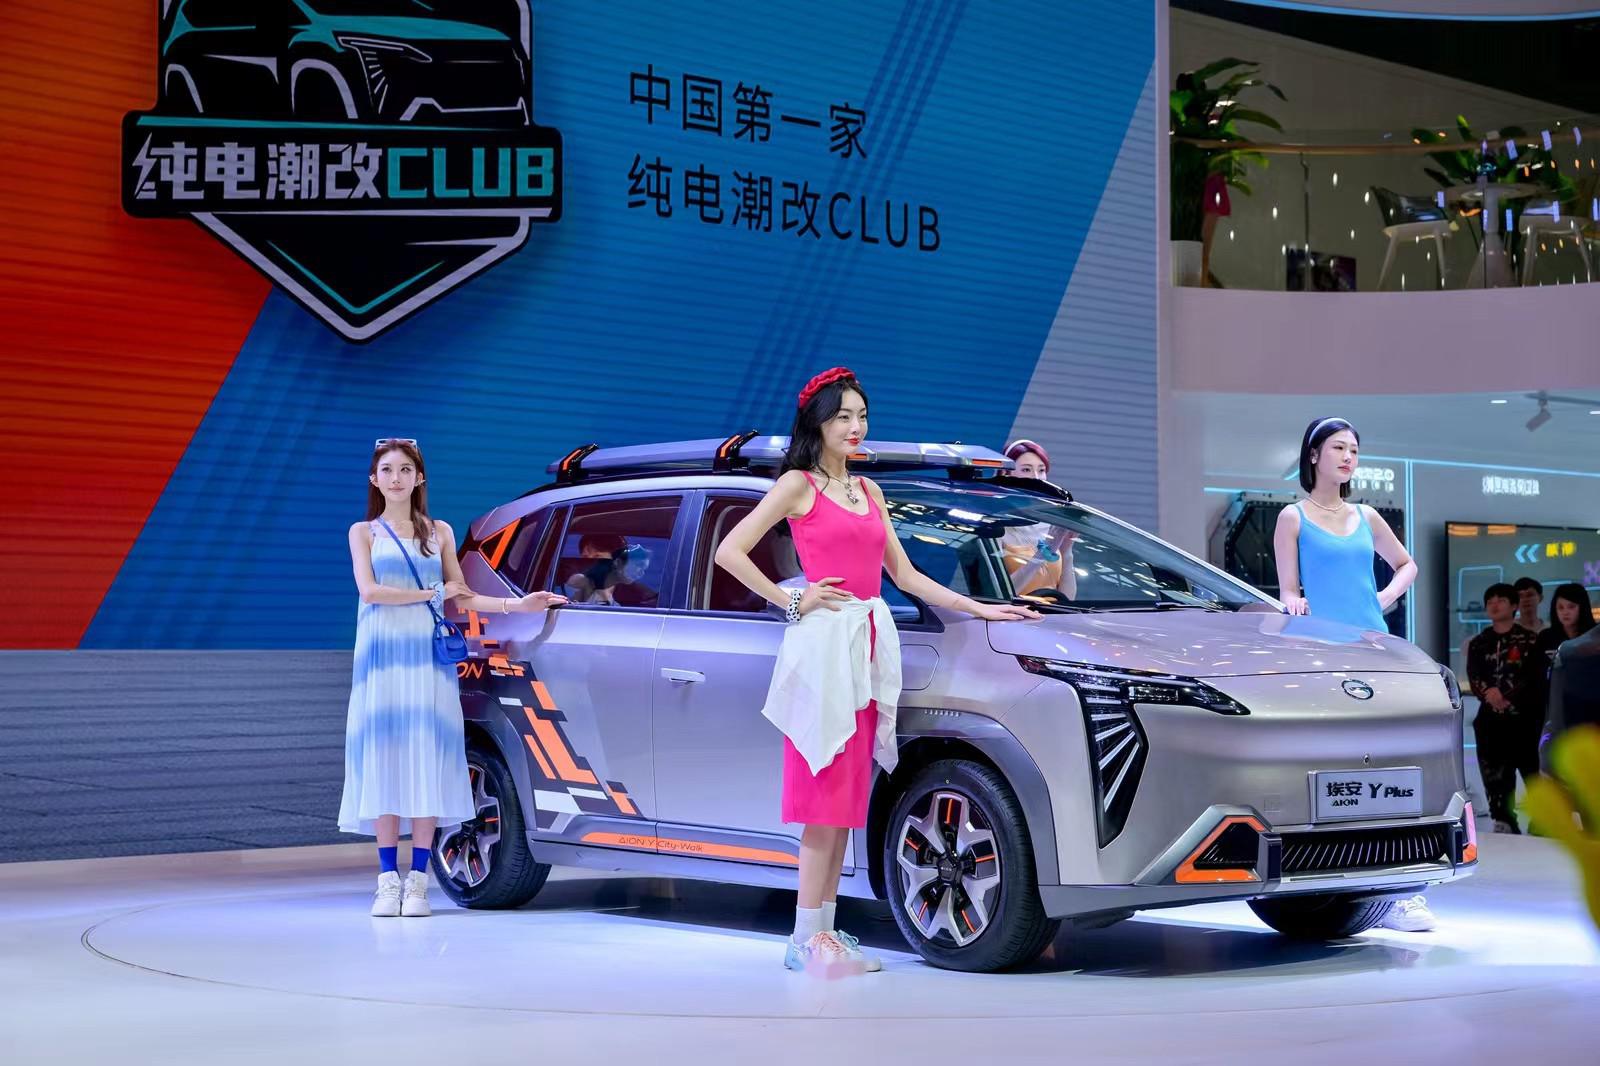 在今年的广州车展上,埃安不仅成立了行业首个纯电潮改club,同时也带了